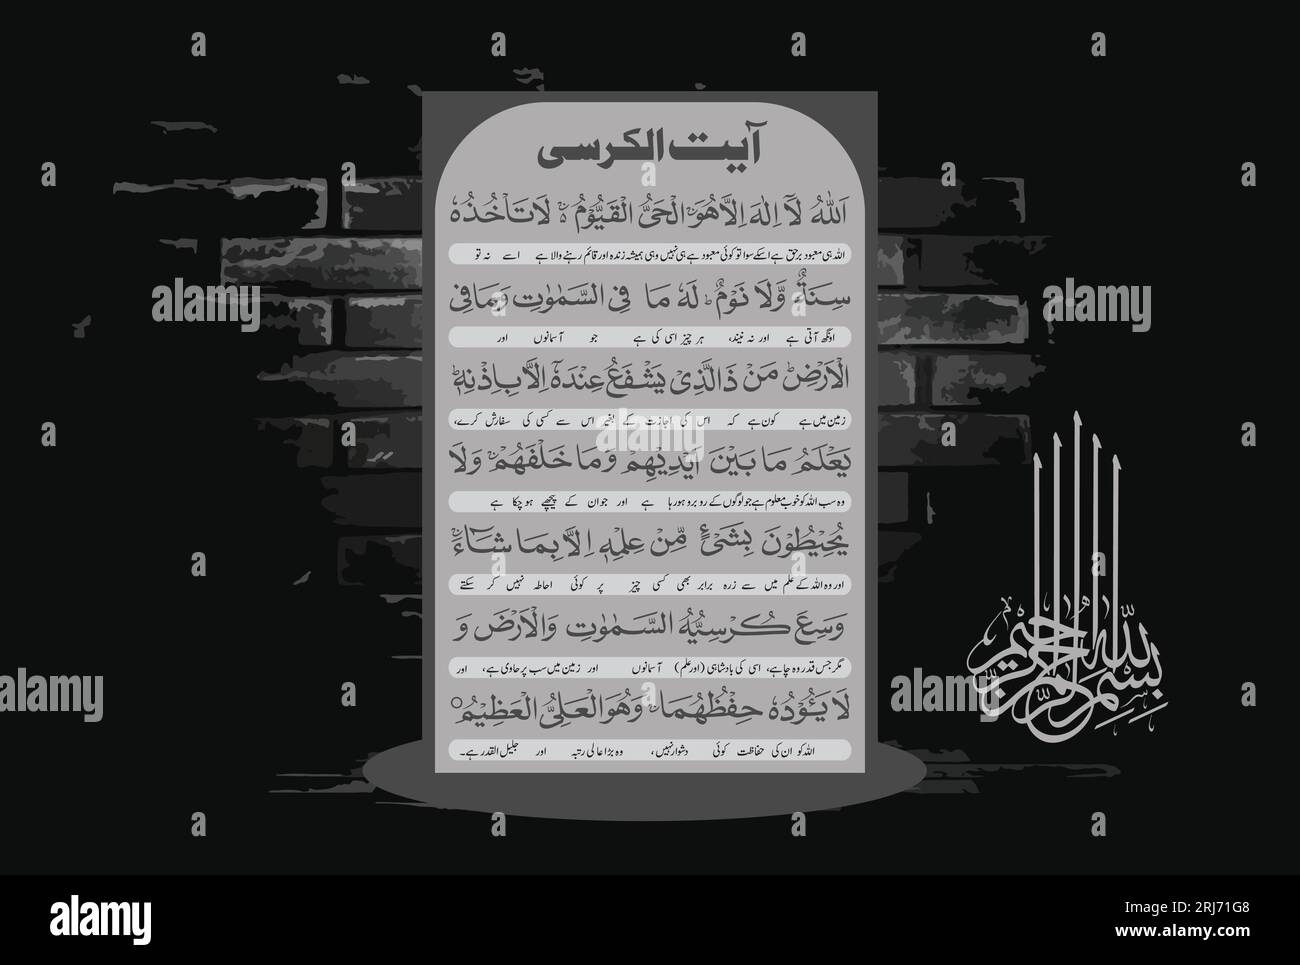 Calligraphie arabe de Ayatul Kursi, Ayat tul Kursi. Sourate Al Baqarah 2, 255 du Noble Coran. Traduction, 'Allah! Il n'y a pas de dieu digne de worshi Illustration de Vecteur